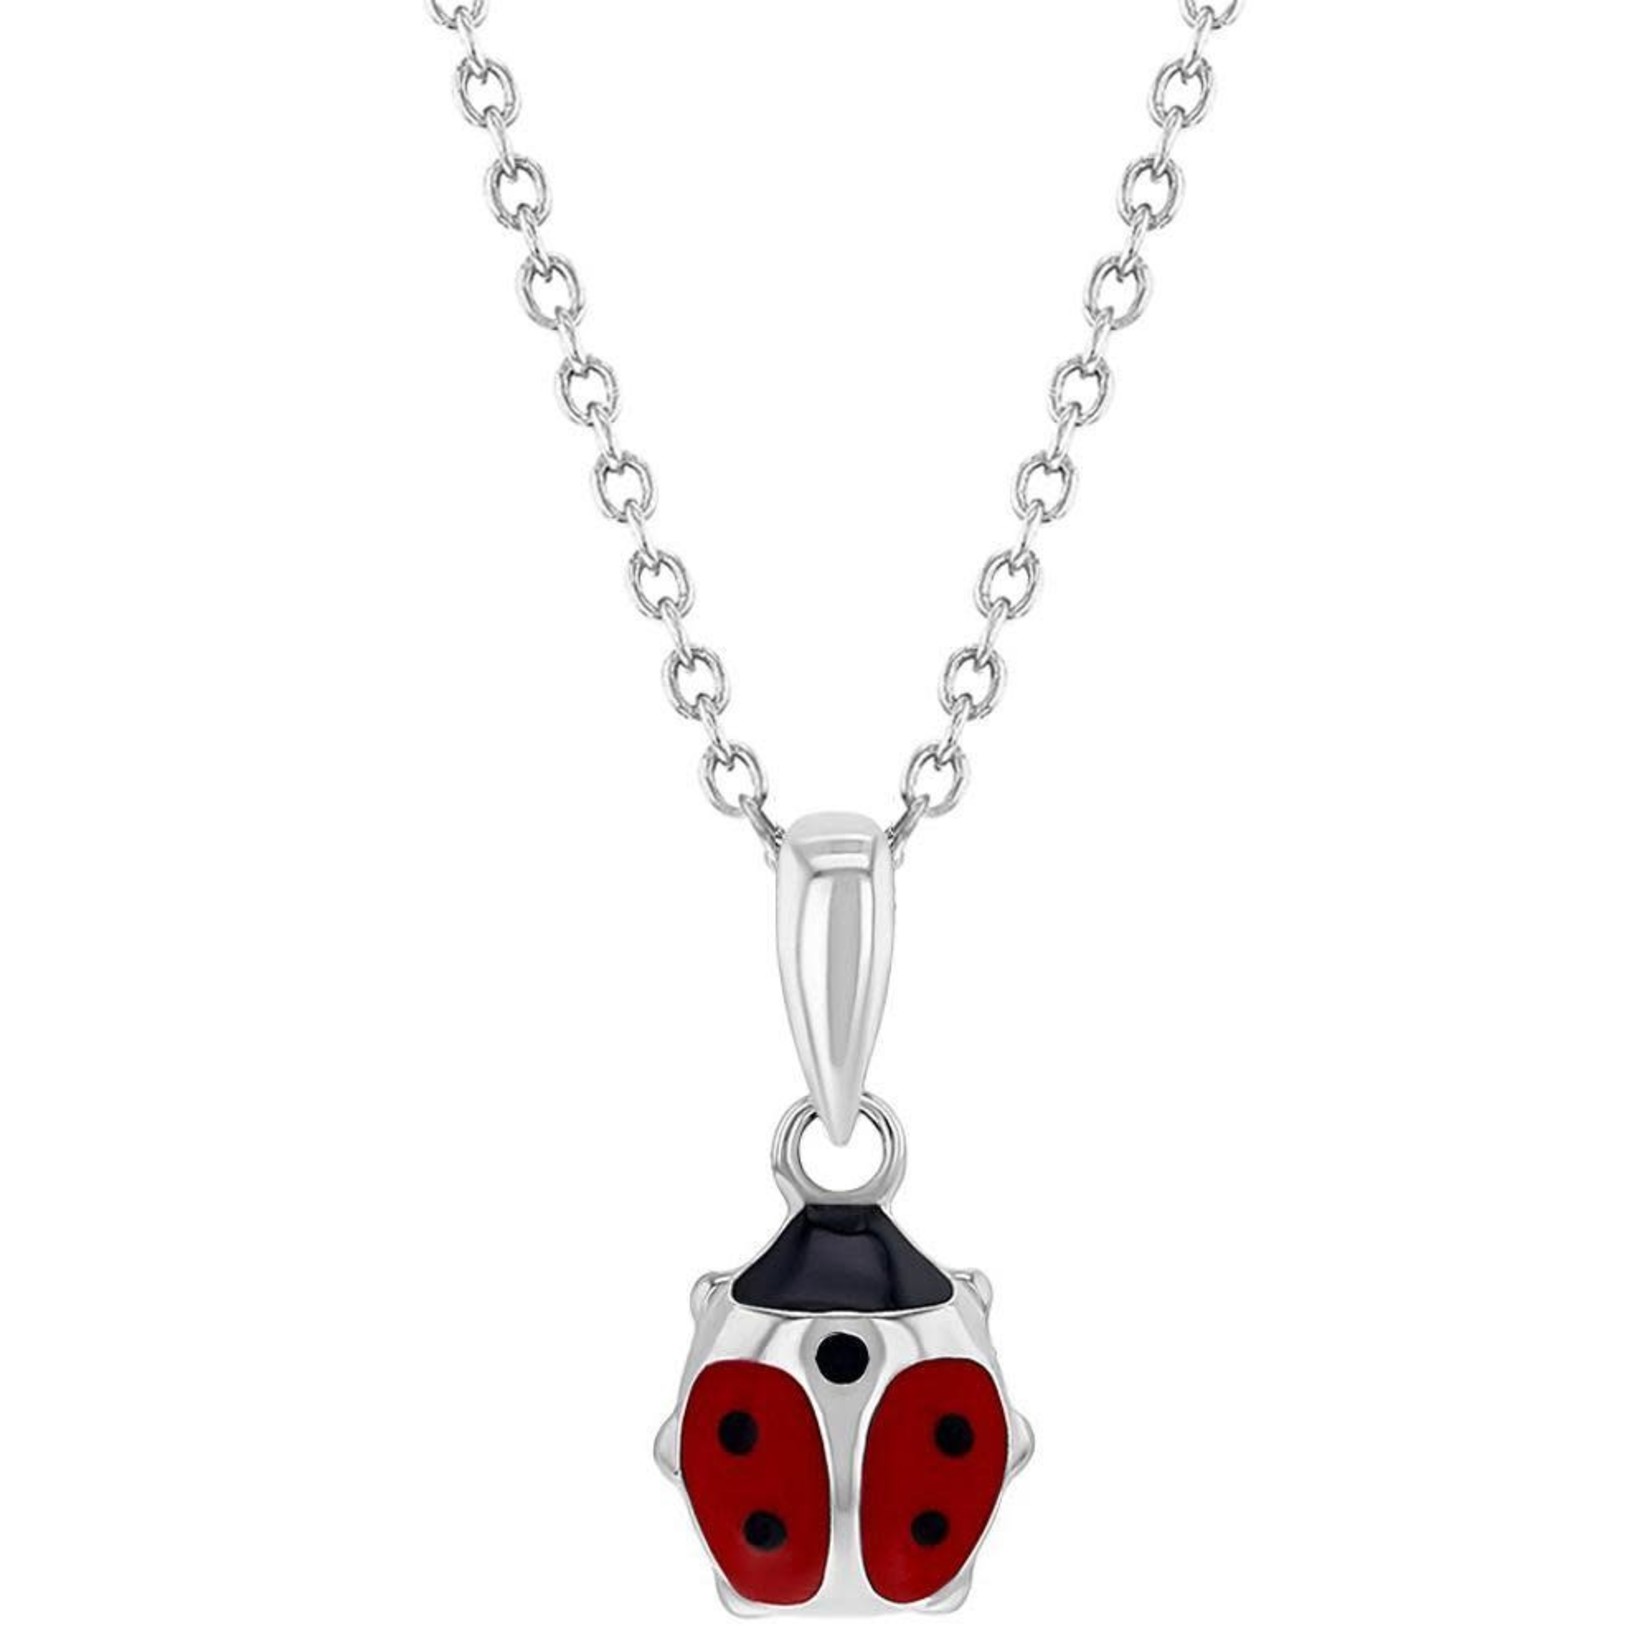 Ladybug Pendant and Earrings Set